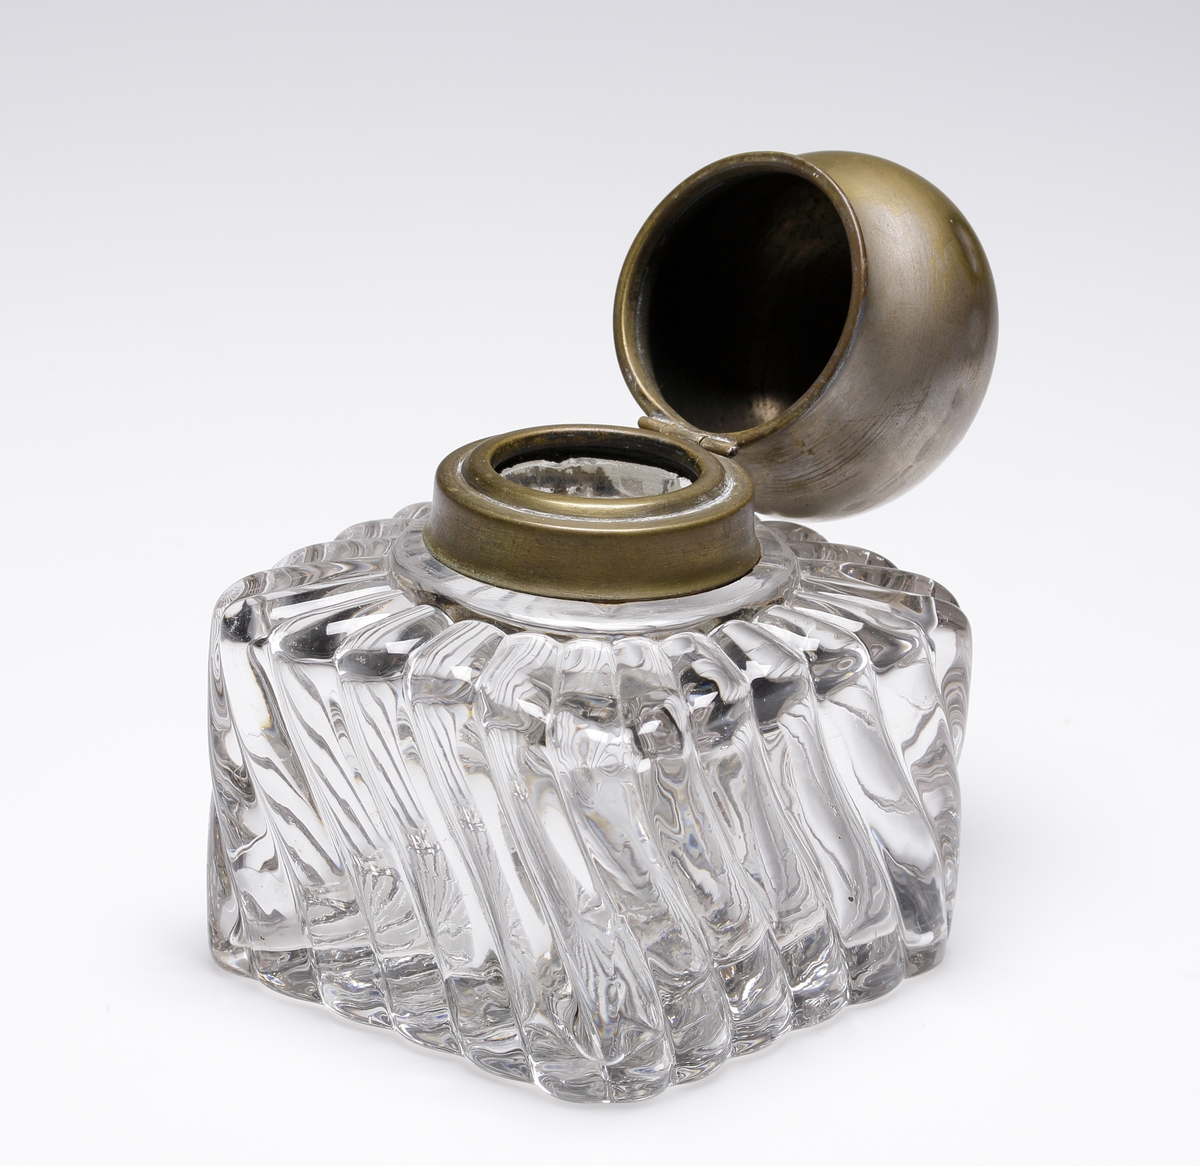 Bläckhorn i pressat glas med fyrkantig form och snedgående räfflor. Lock av mässing. Tillverkare är troligen Baccarat.